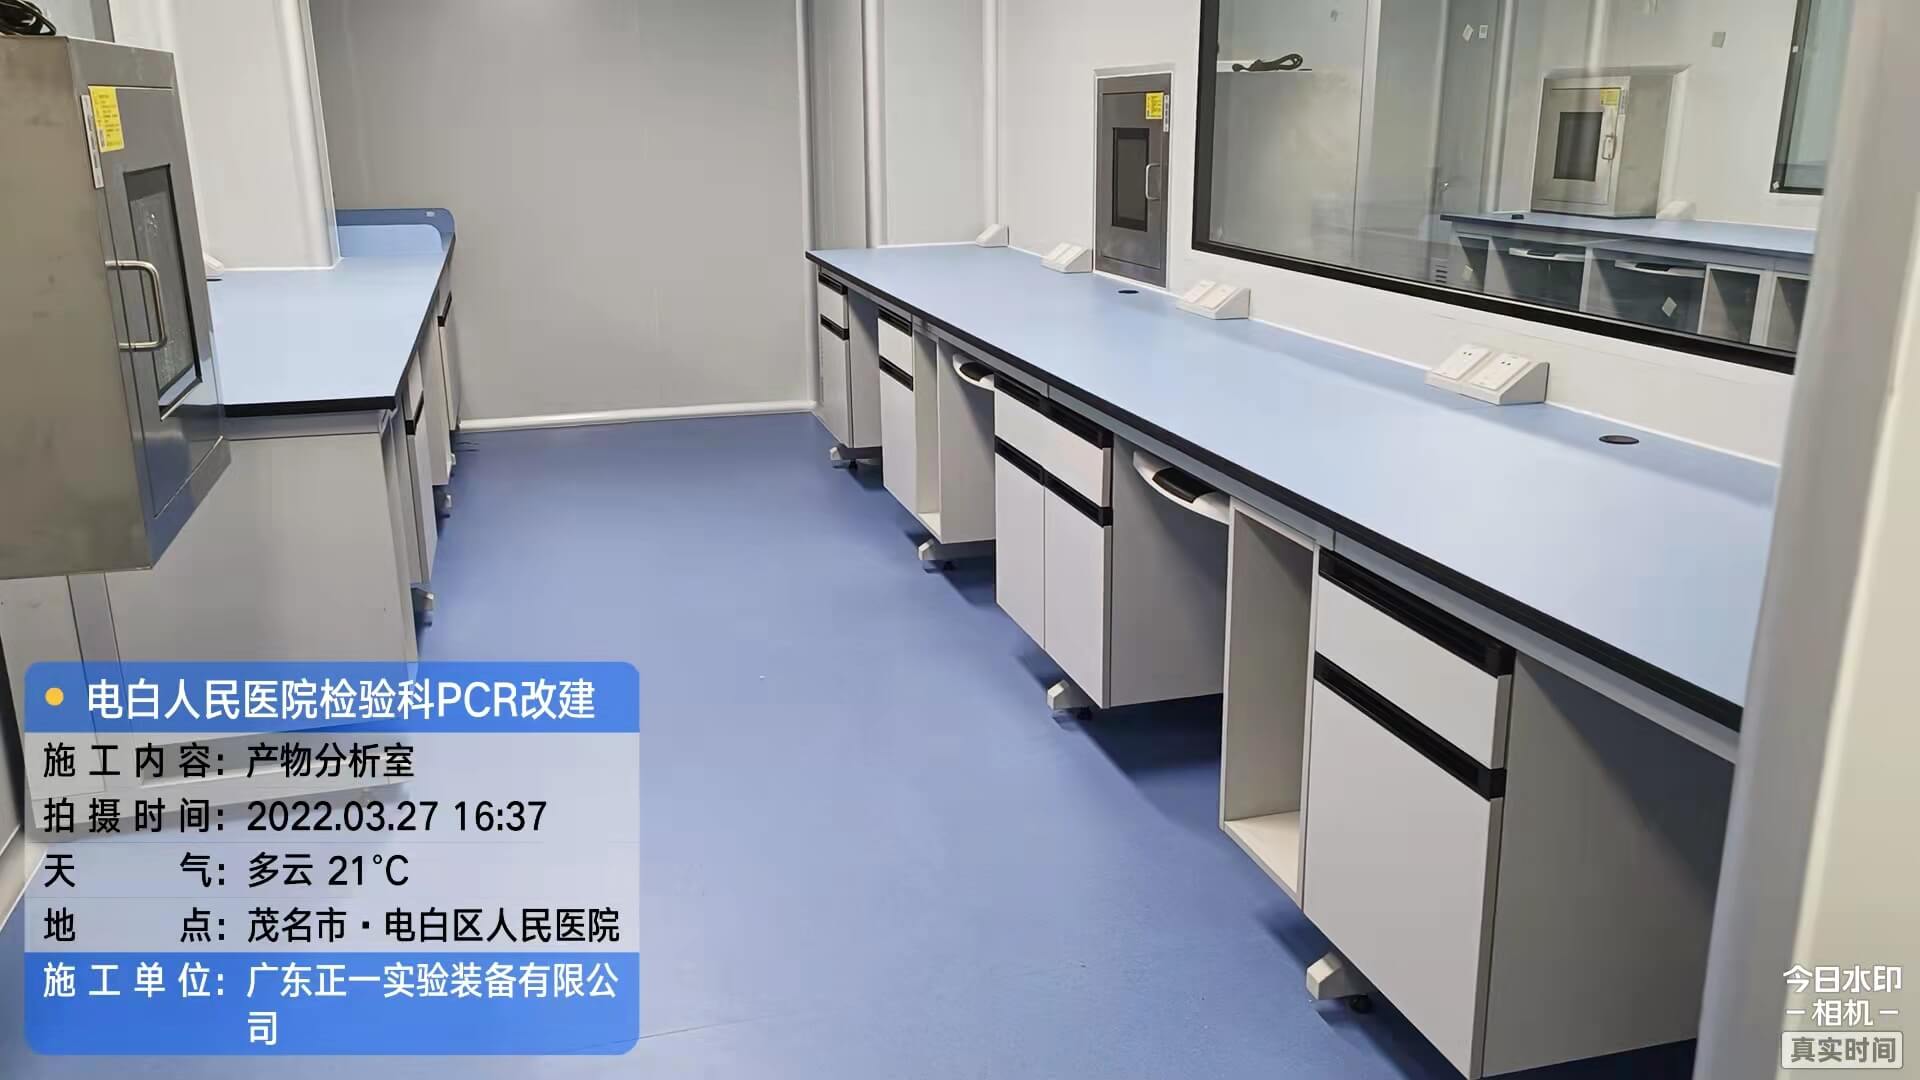 茂名市电白区人民医院外科综合楼12、13层改建检验科及PCR实验室工程 (33)